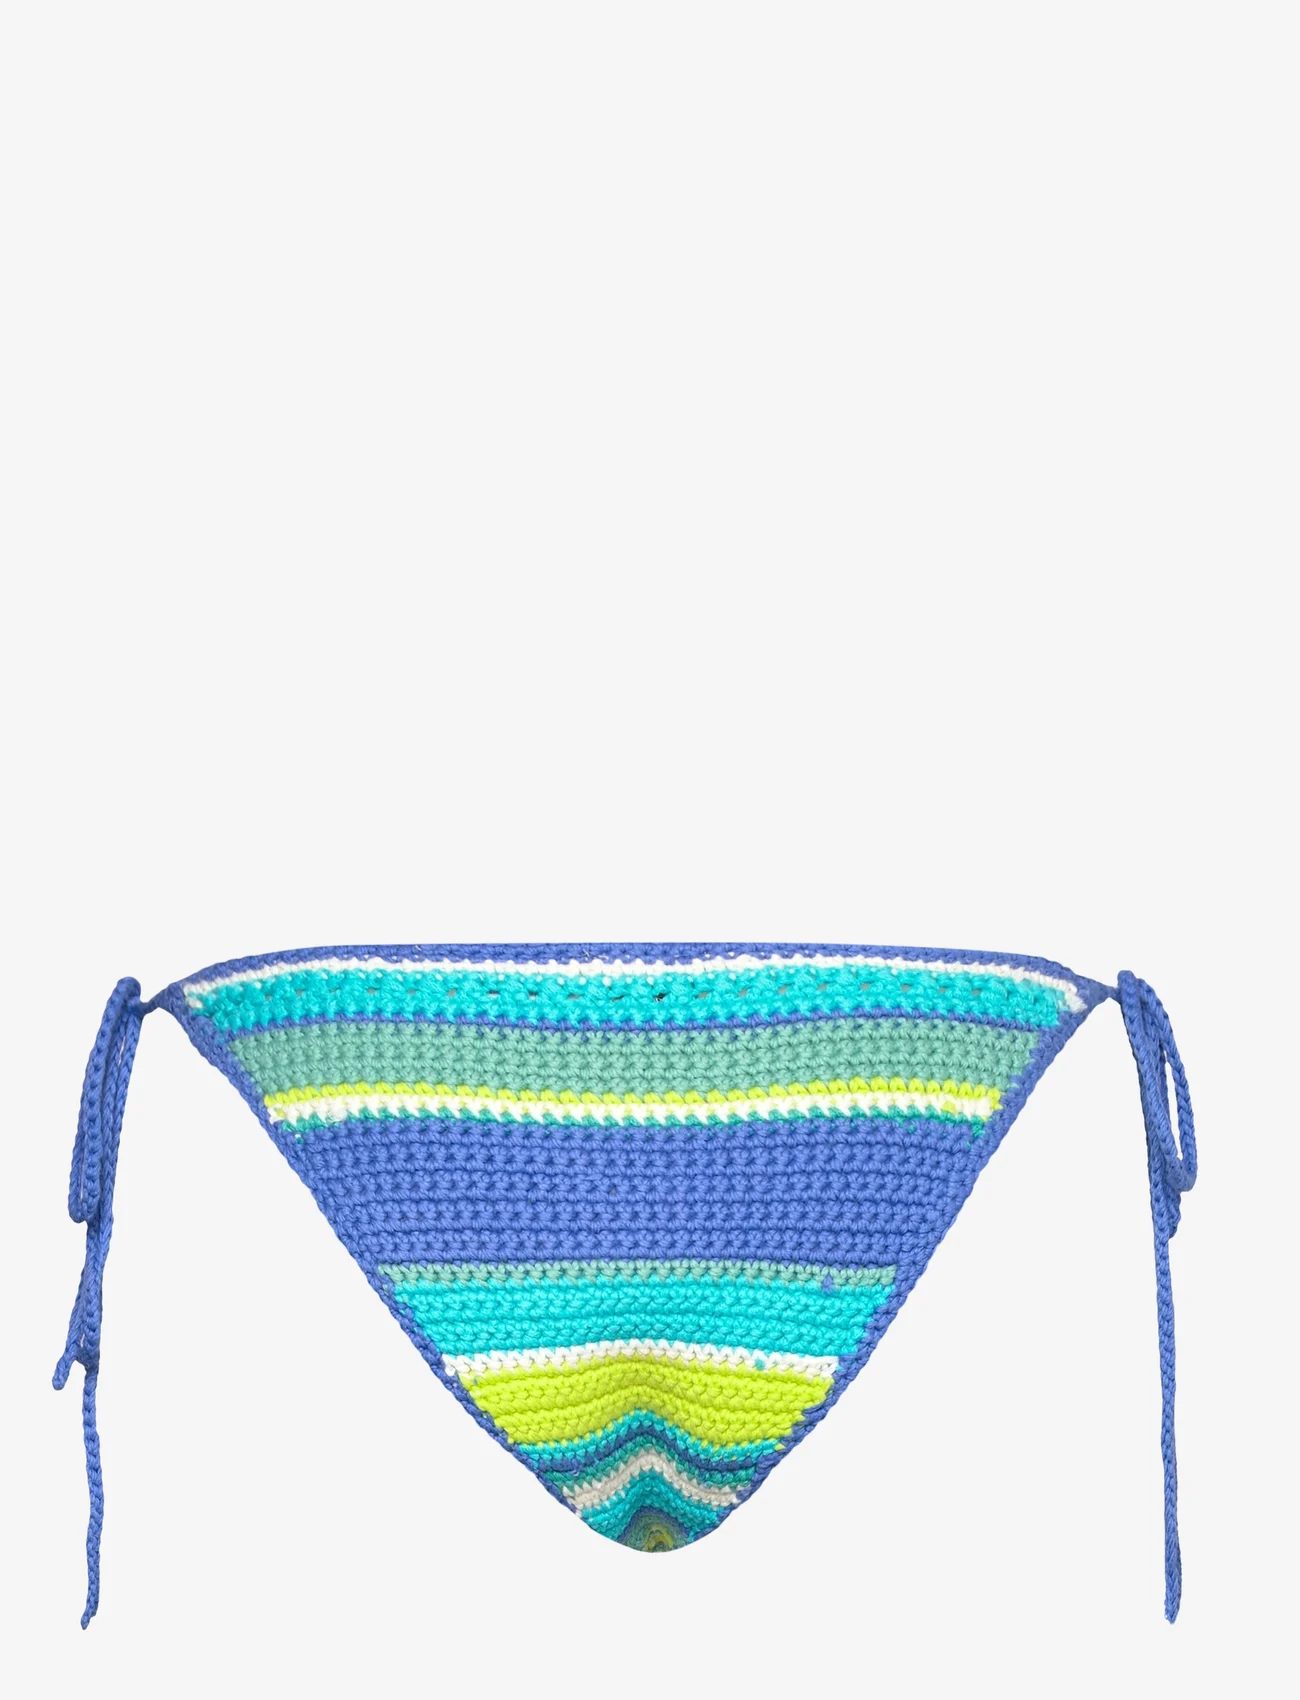 Ganni - Crochet Swimwear - side tie bikinier - blue curacao - 1